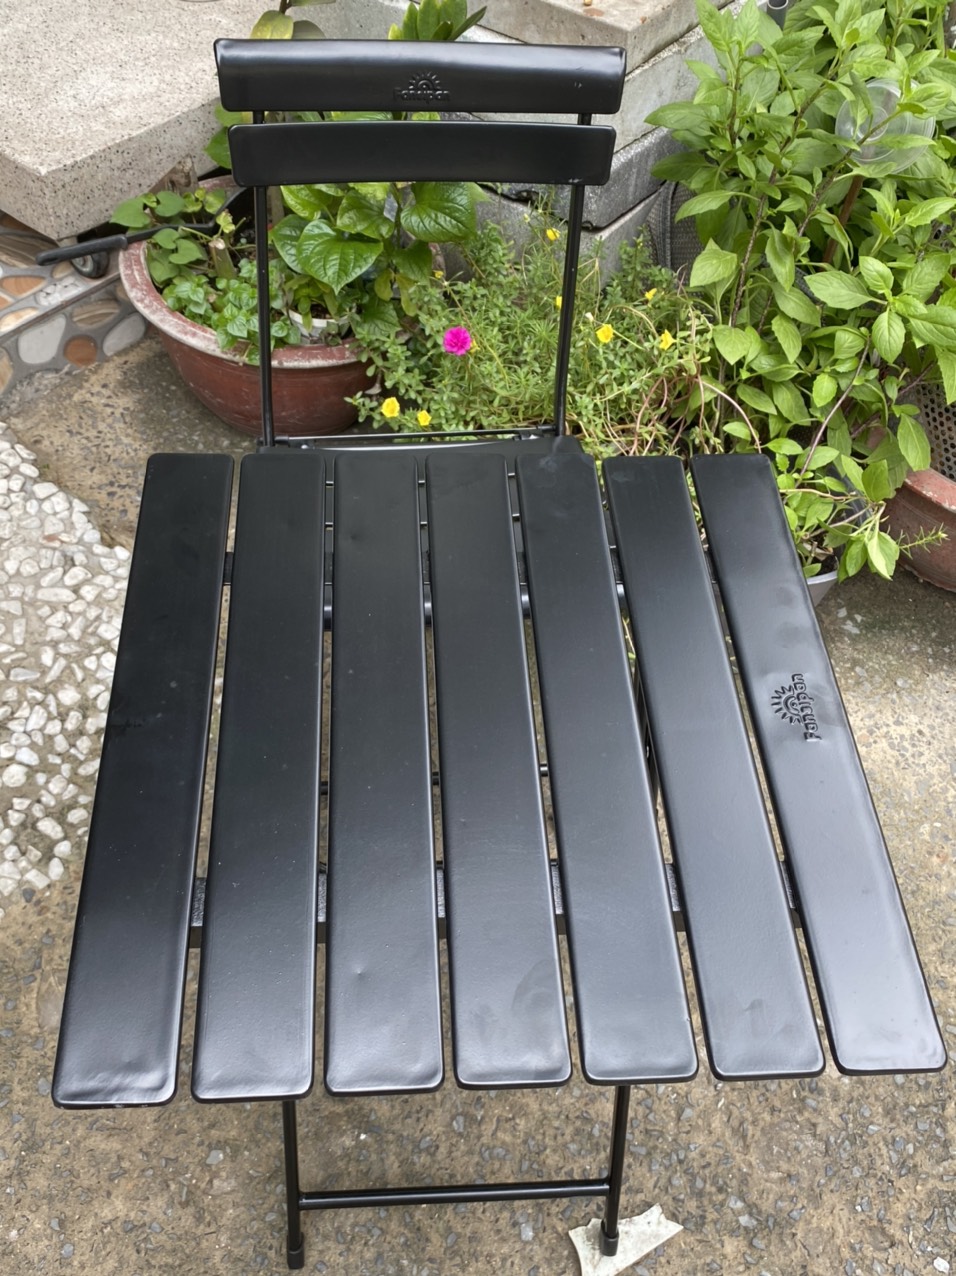 Bộ bàn ghế sắt mini color - màu đen